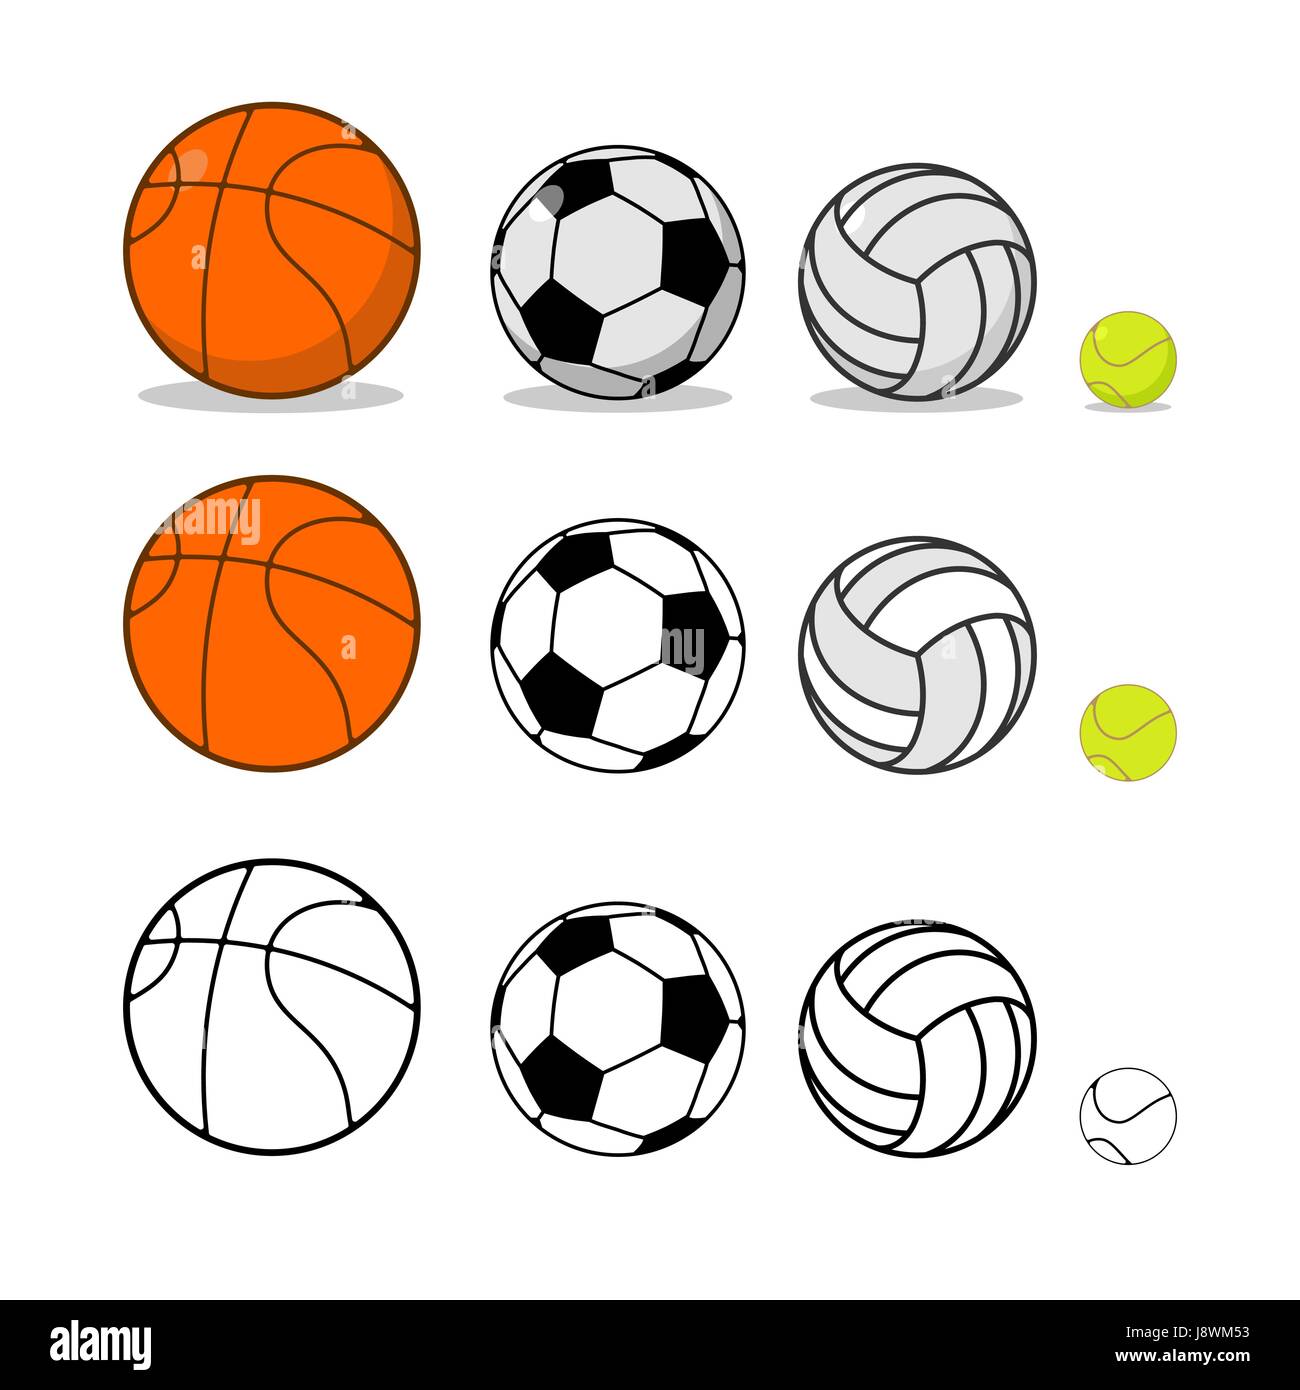 Sport-Ball-Set. Basketball und Fußball. Tennis und Volleyball. Sportgeräte  für Spiele Stock-Vektorgrafik - Alamy